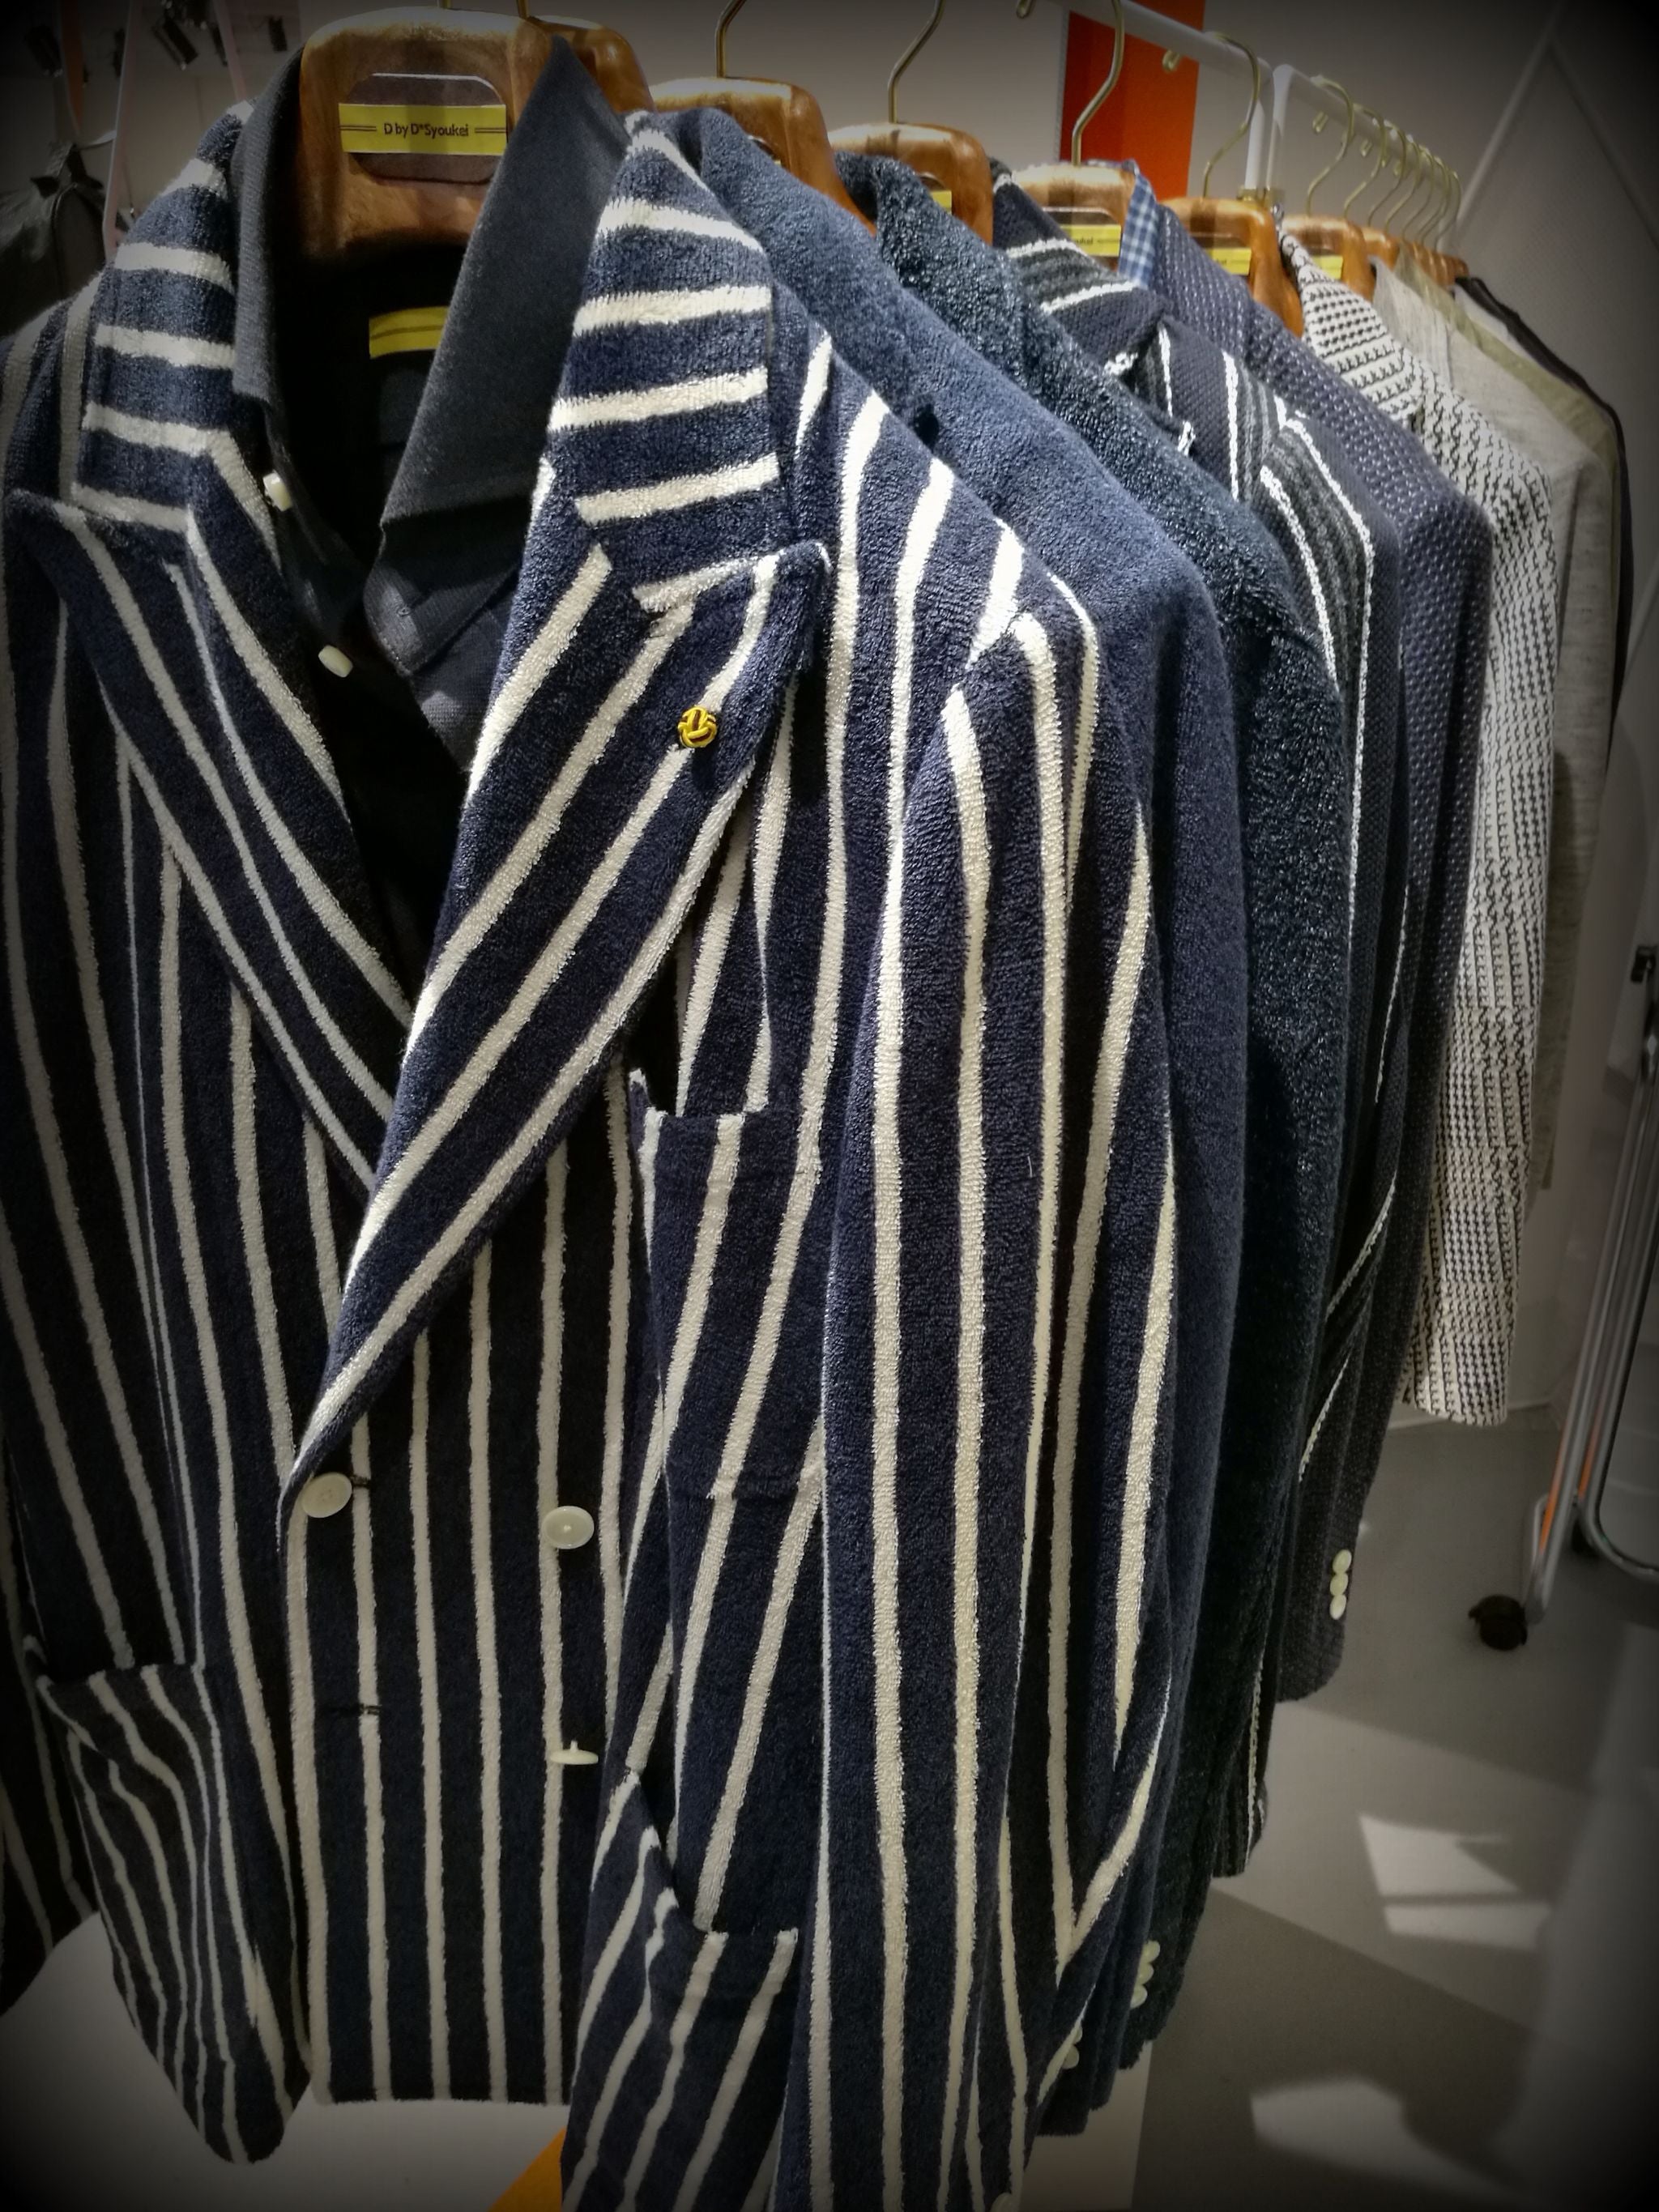 Pitti Uomo 90 trends - striped spor coats